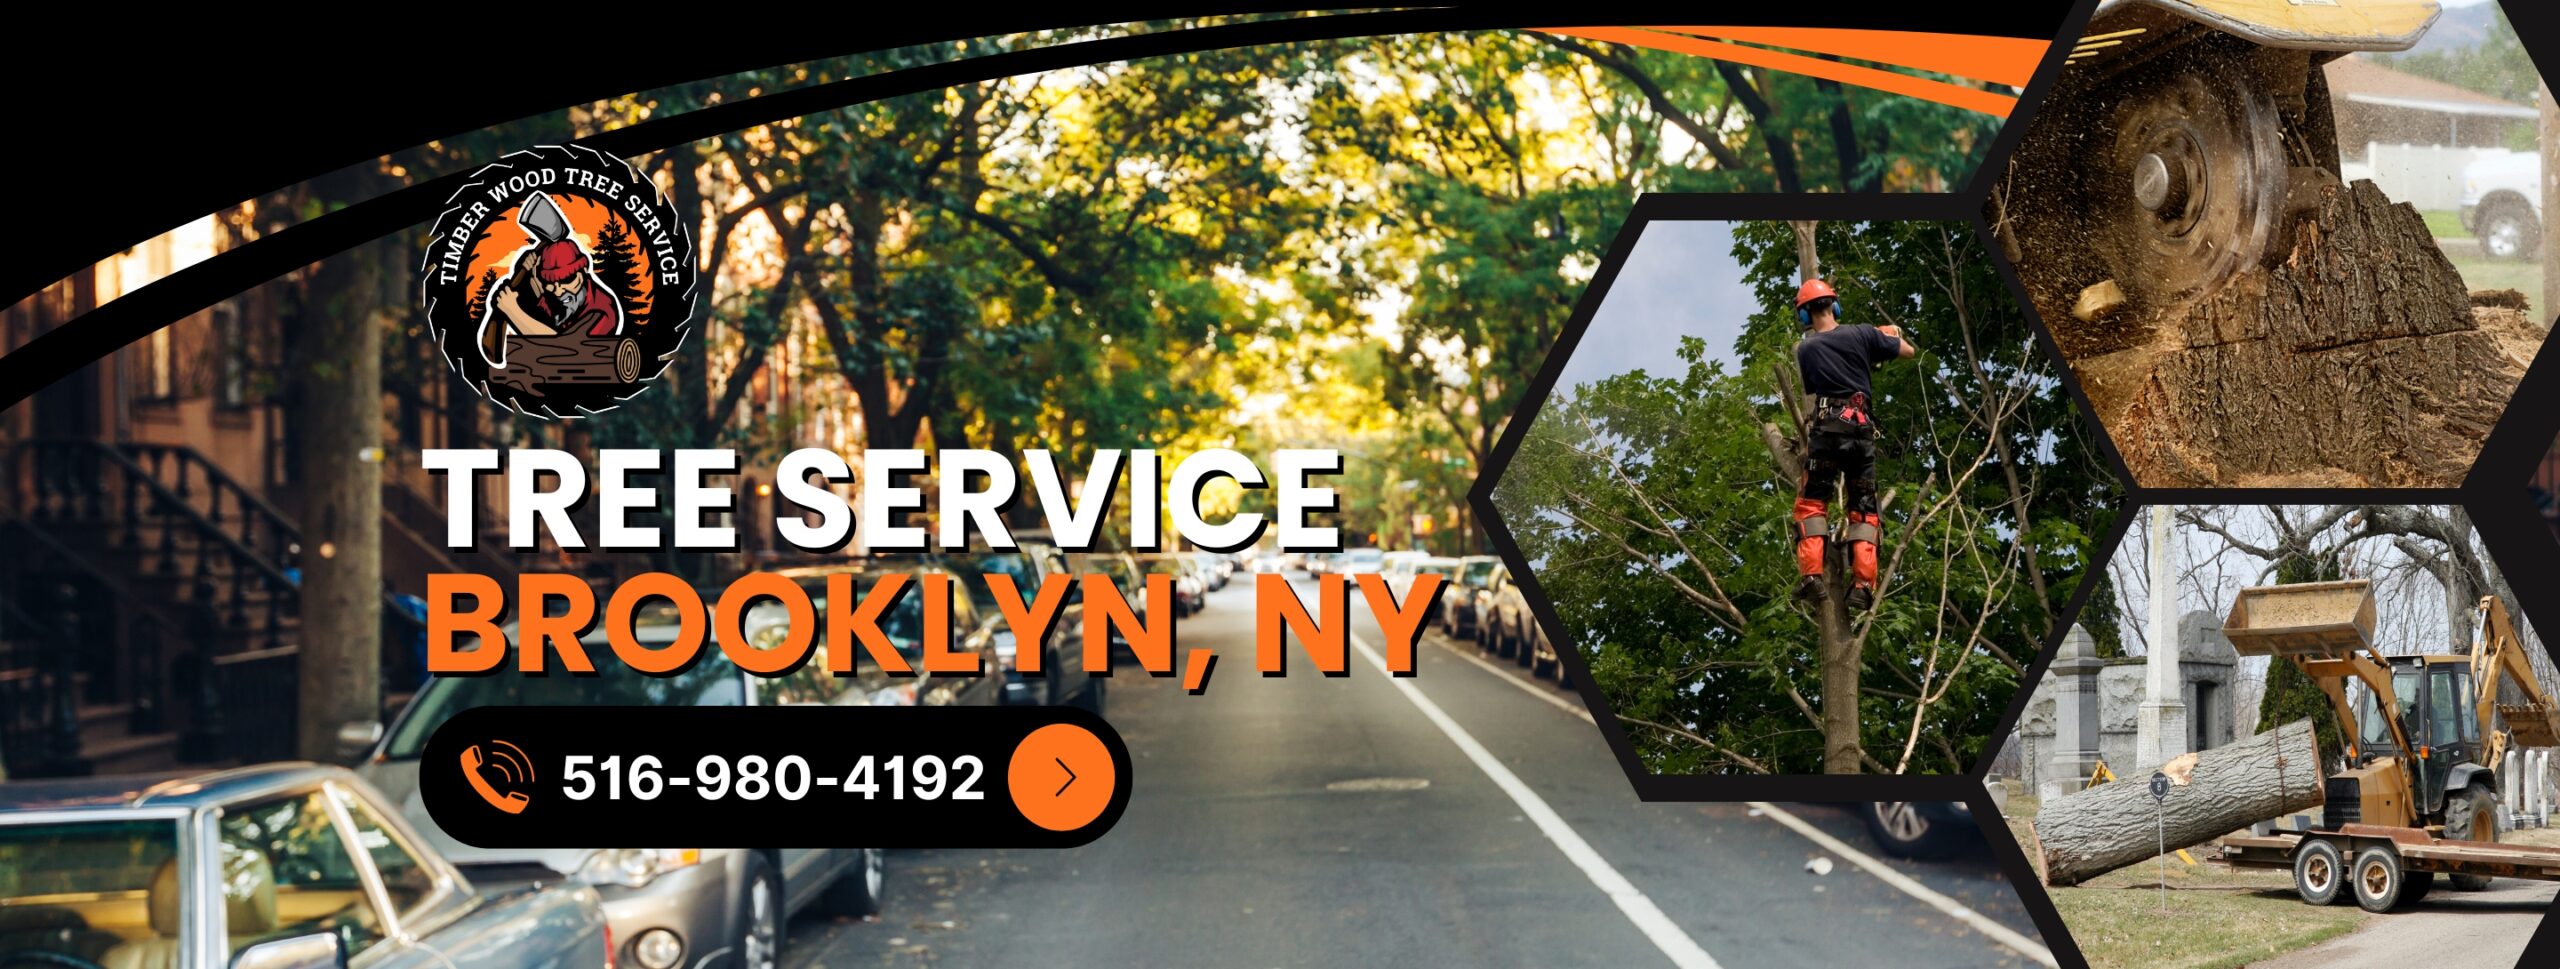 Brooklyn-Tree-Service